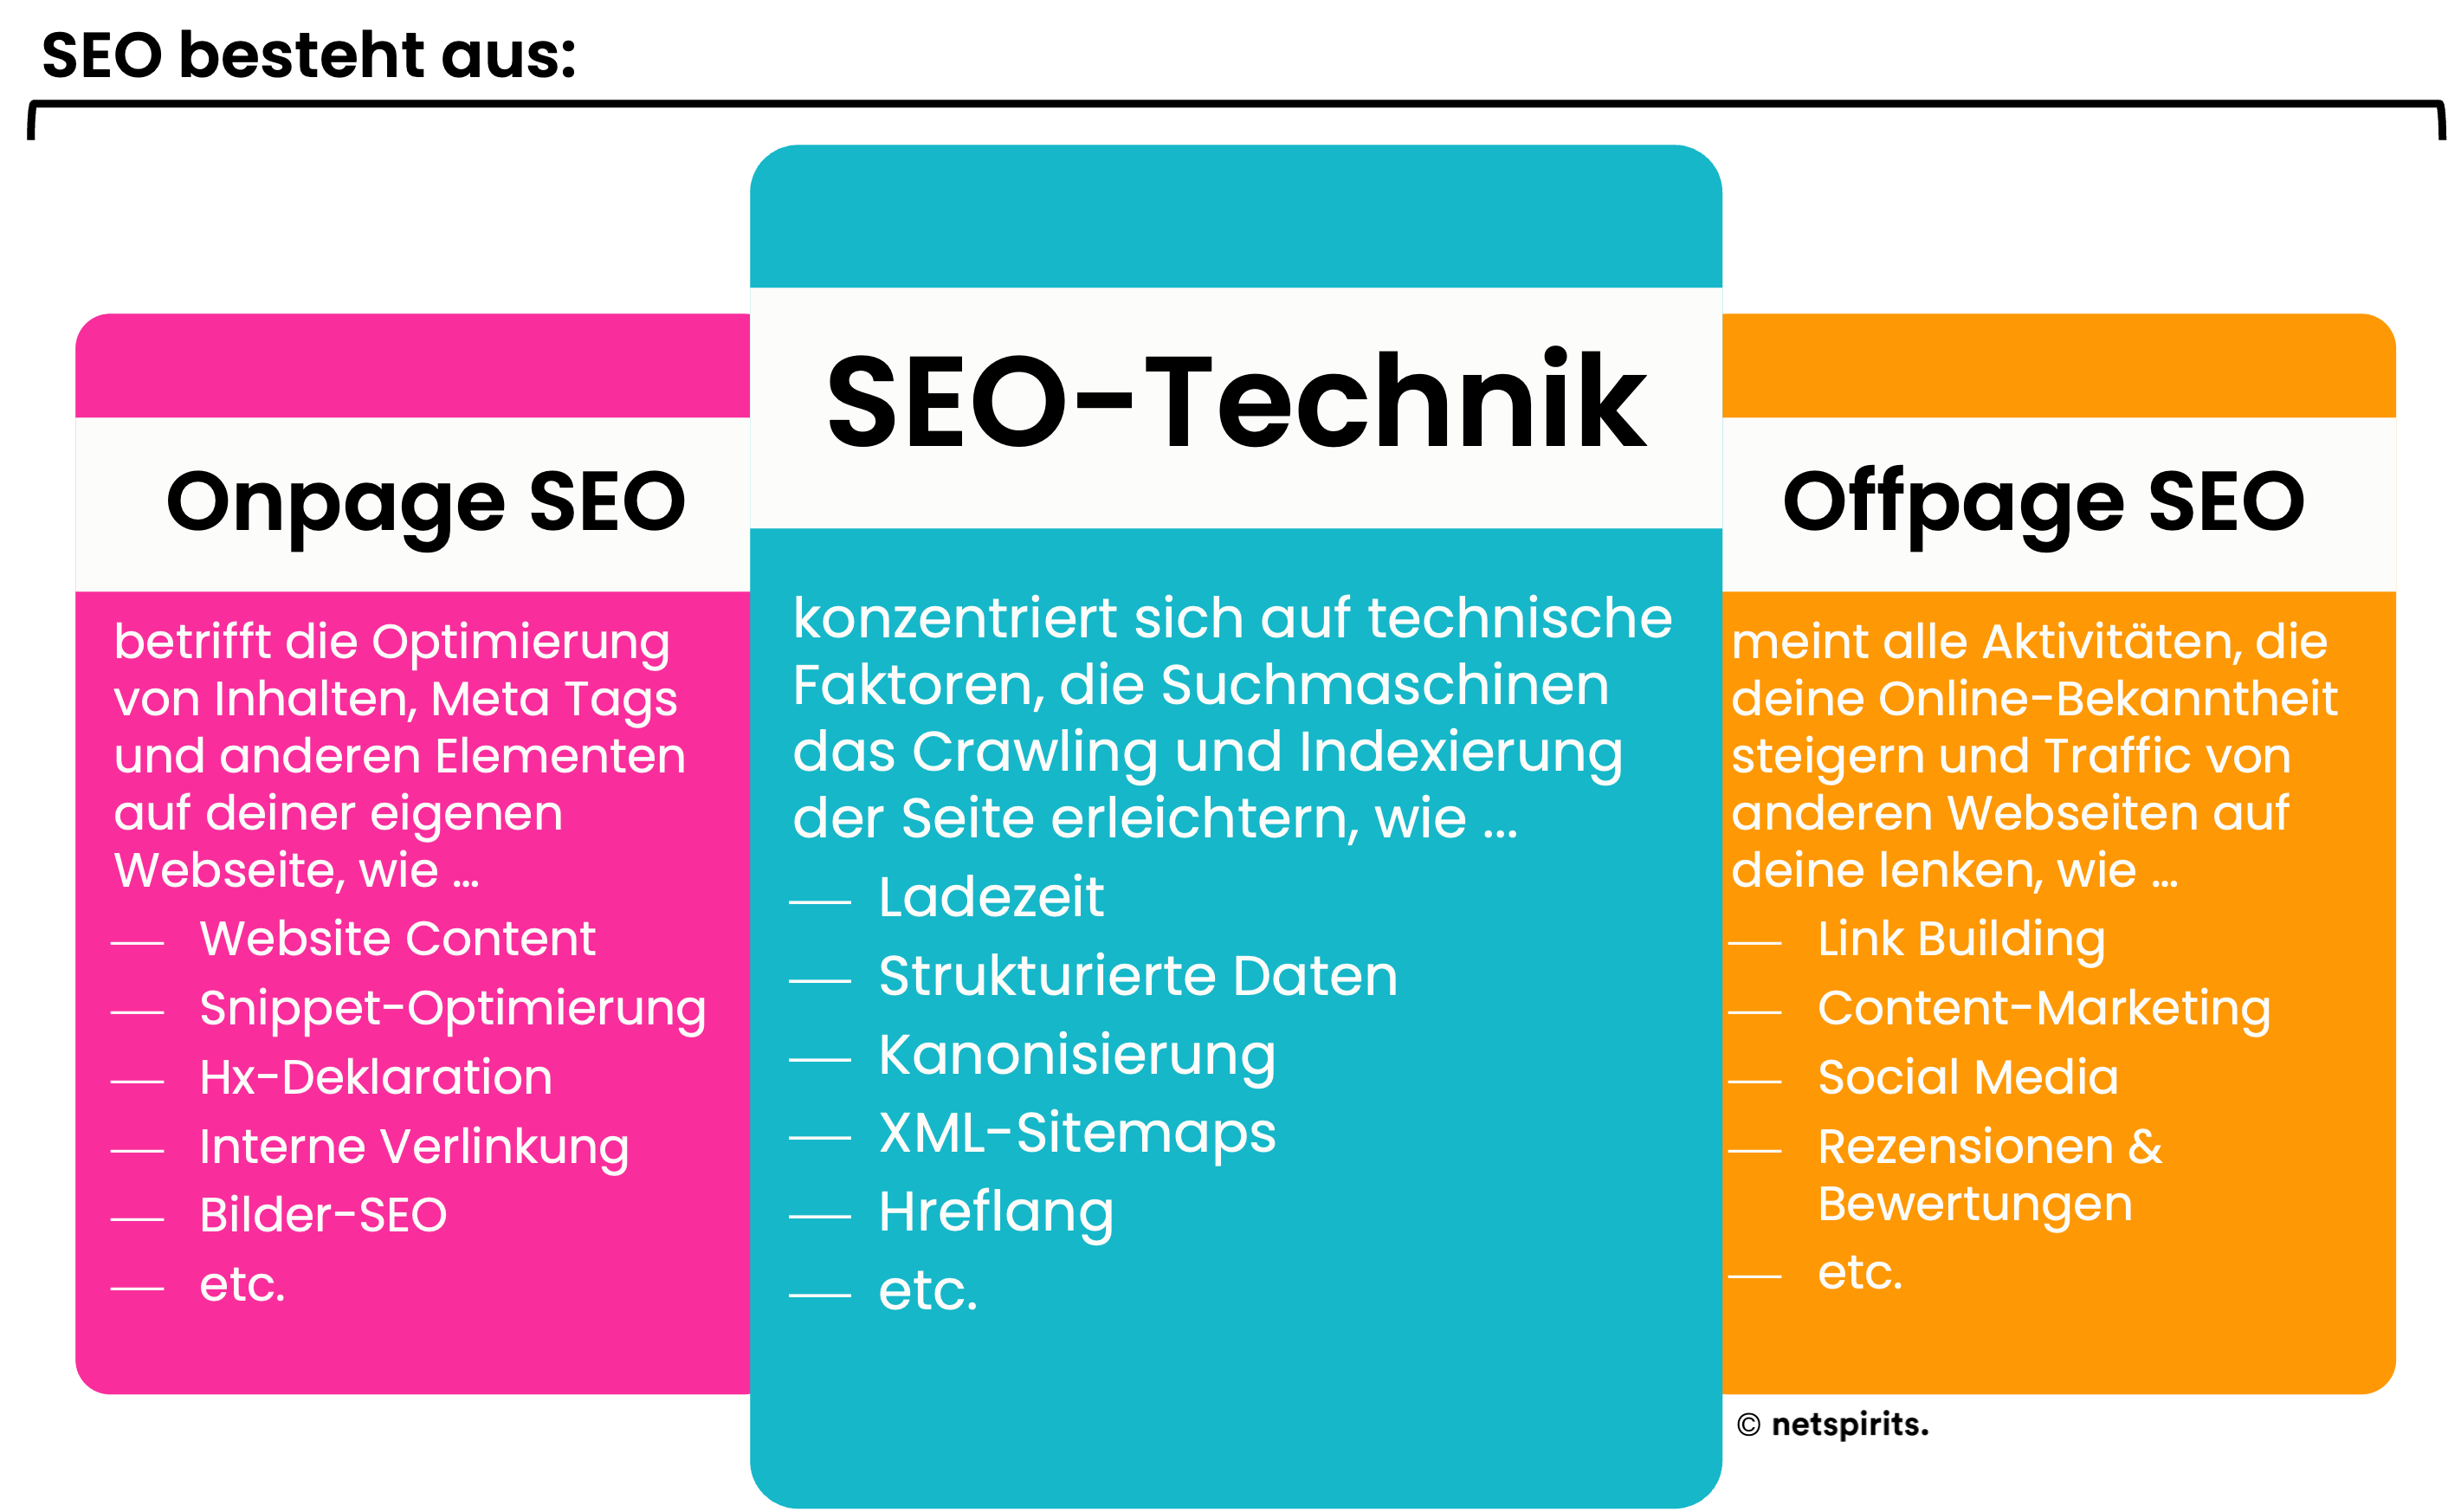 Suchmaschinenoptimierung besteht aus Onpage SEO, SEO-Technik und Offpage SEO.